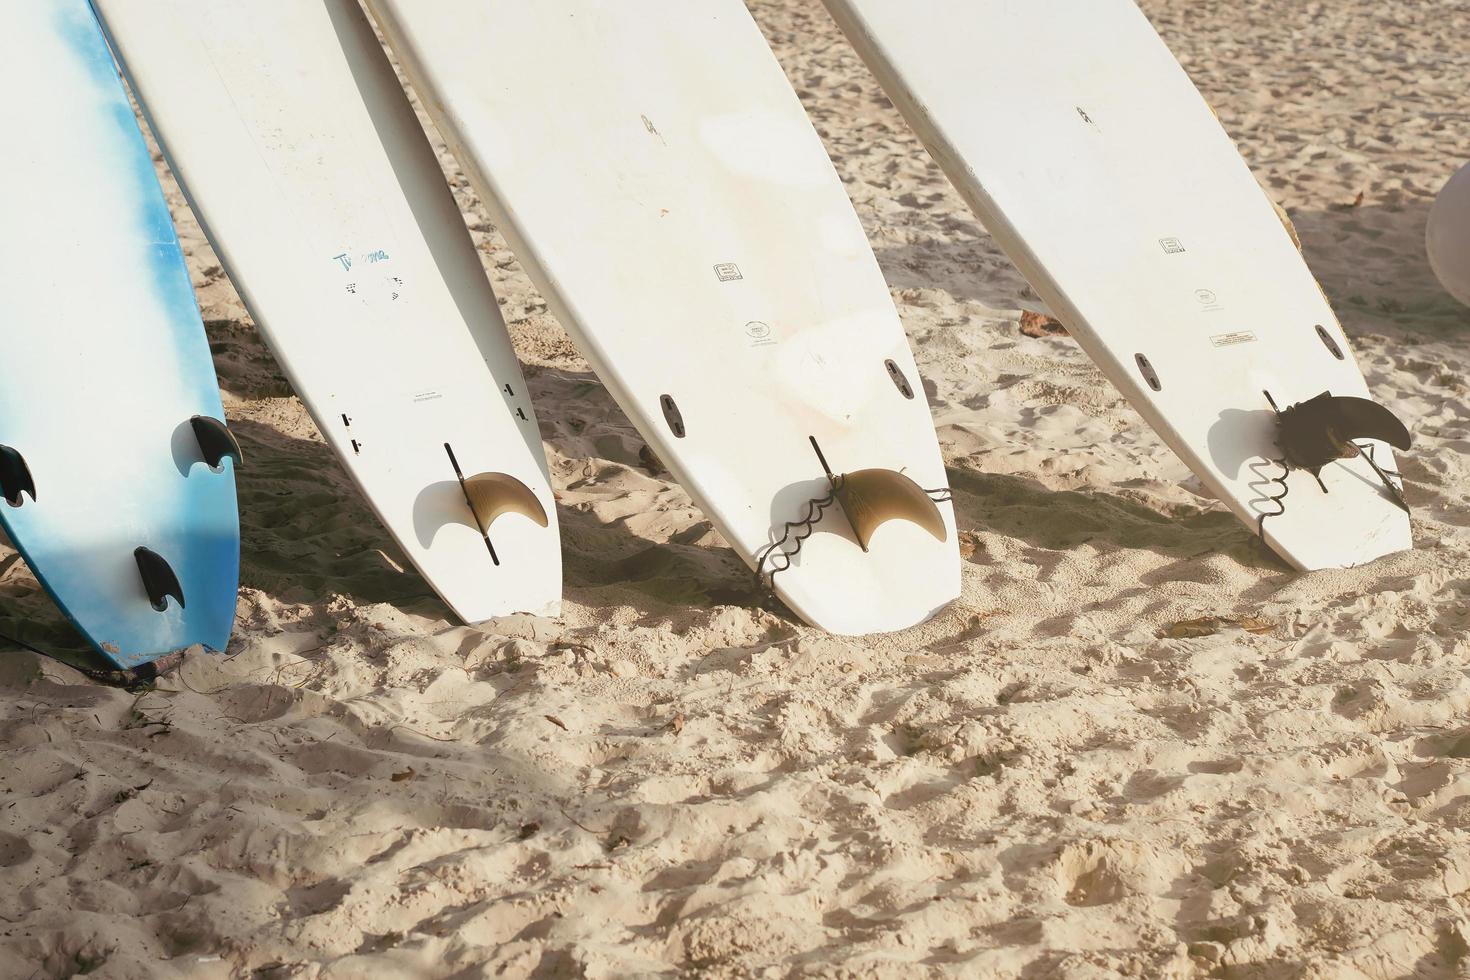 tablas de surf instaladas en la playa de arena durante el día de los deportes de verano al atardecer foto